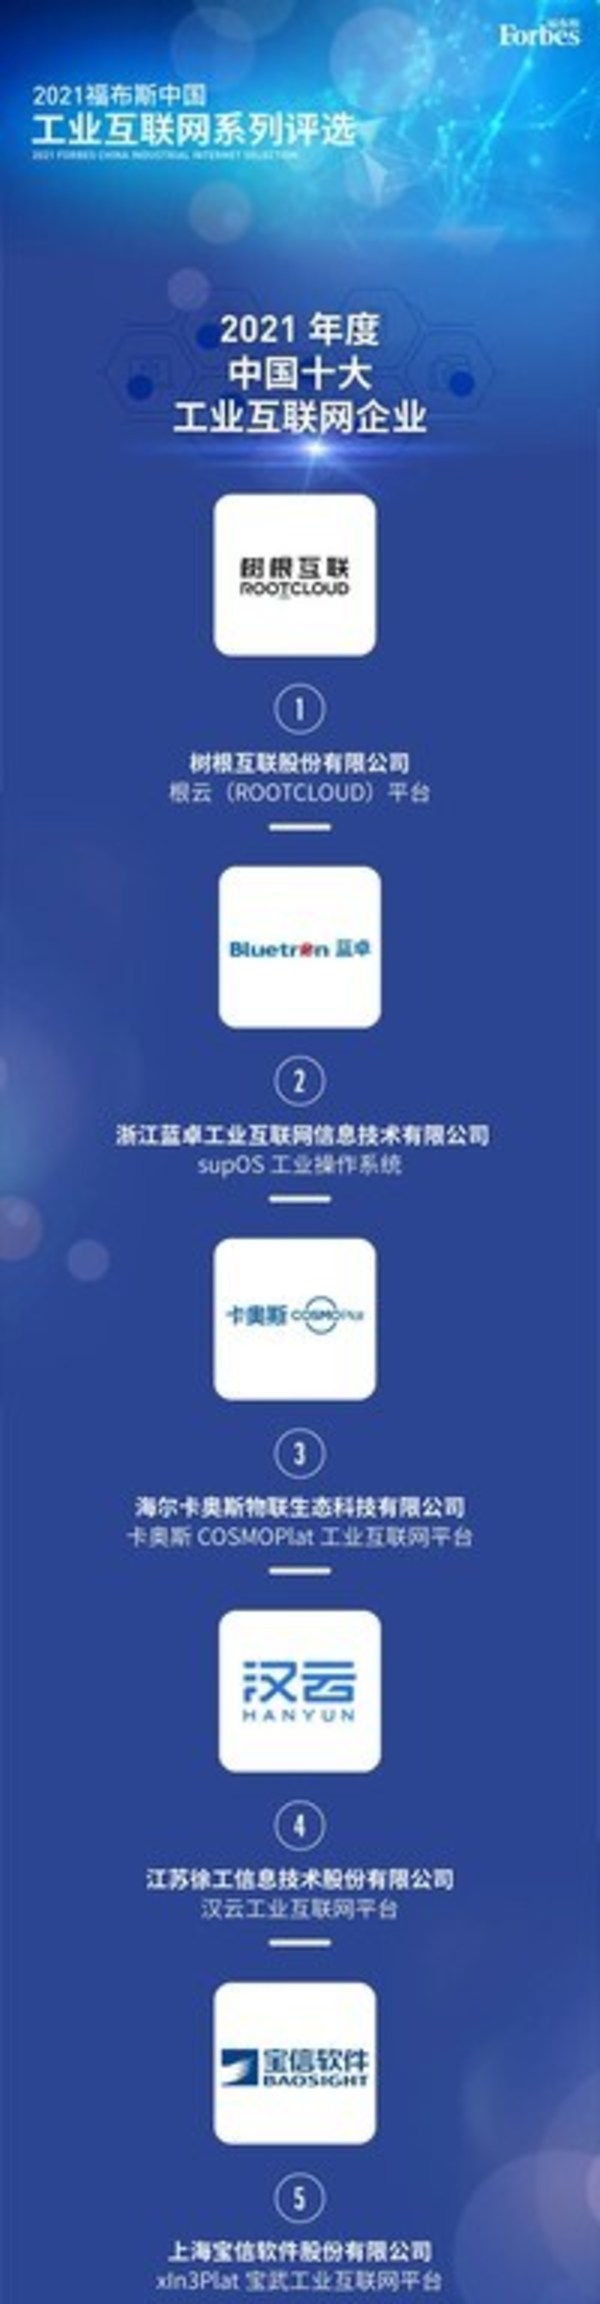 supOS行業第二 蓝卓入选2021福布斯中国十大工業互聯網企业